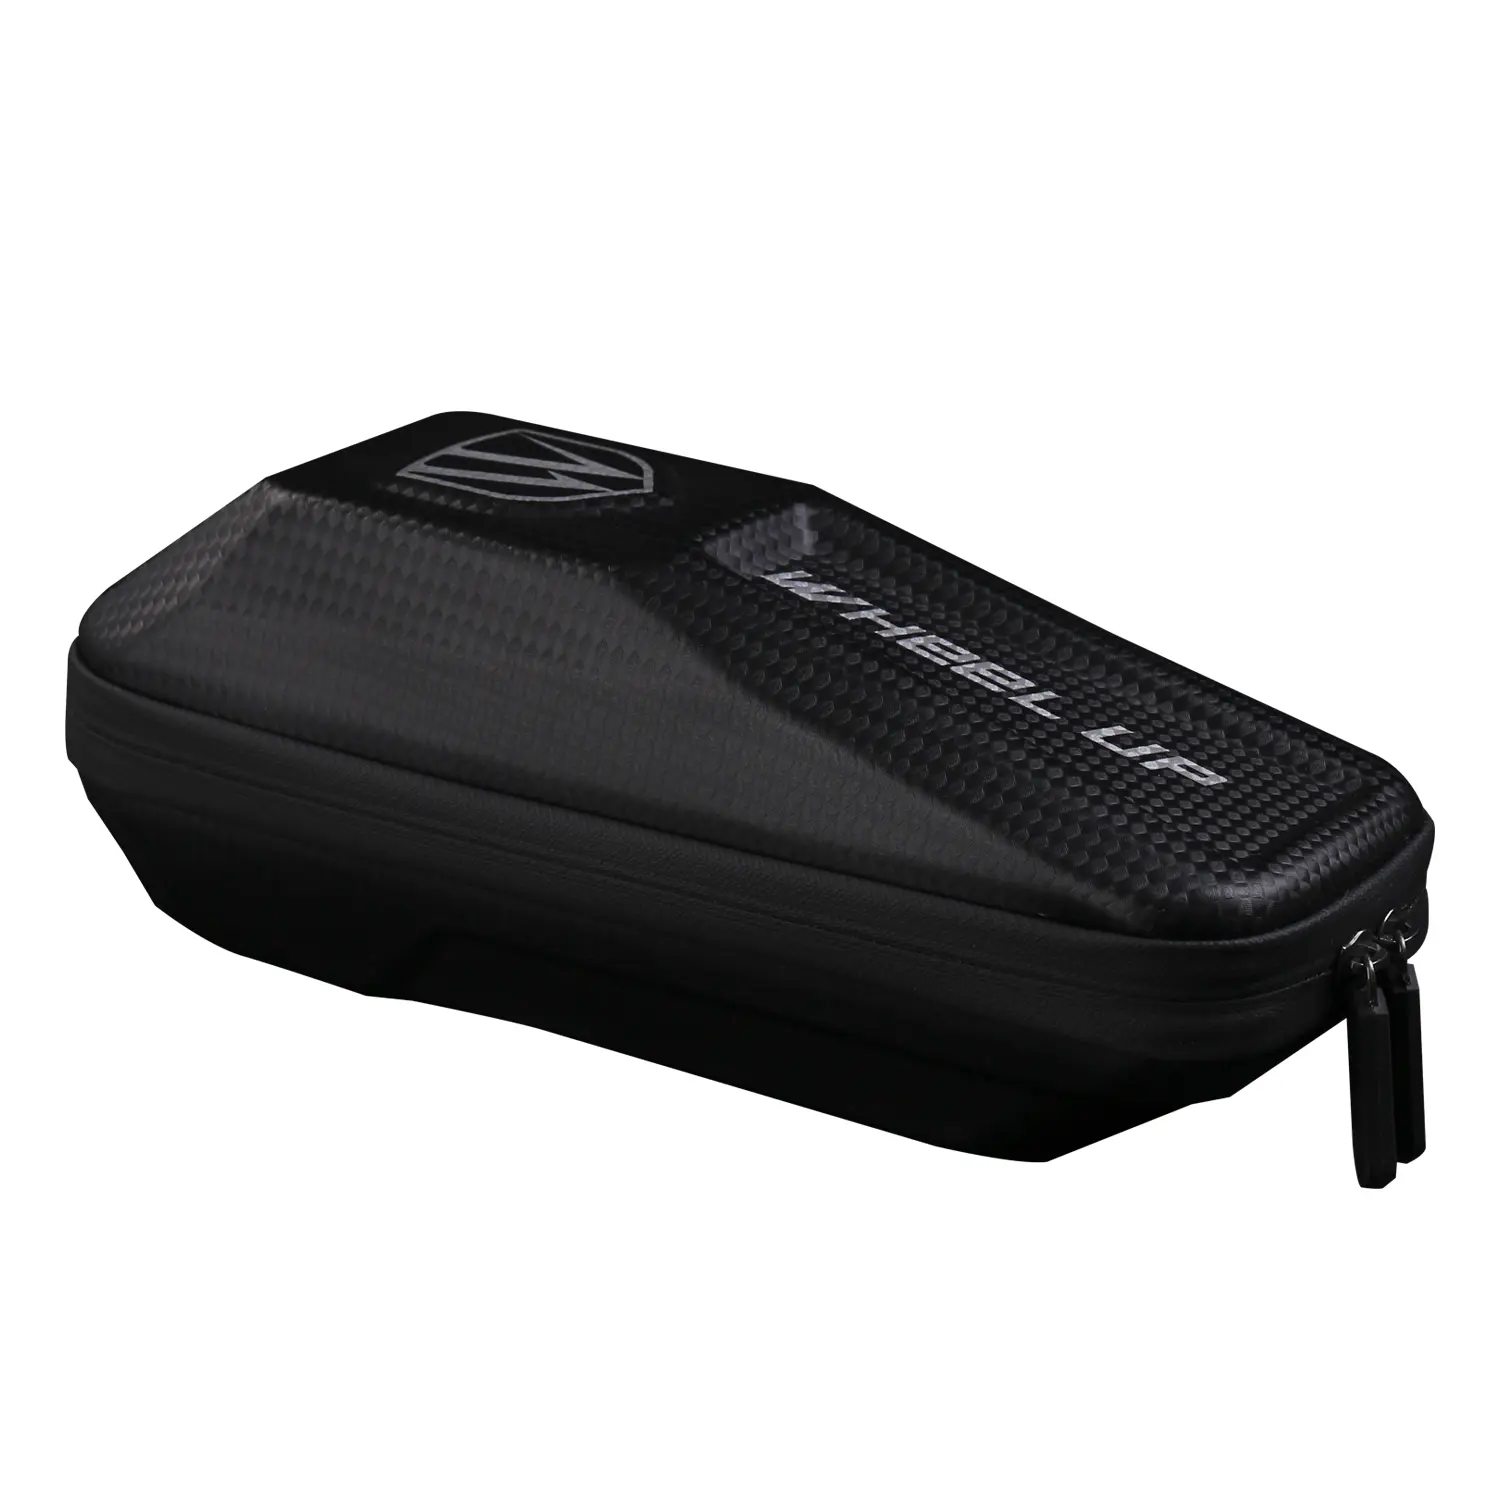 Kerékpárra szerelhető merevített biciklis telefontartó, táska vízálló fekete (B40-BLACK)